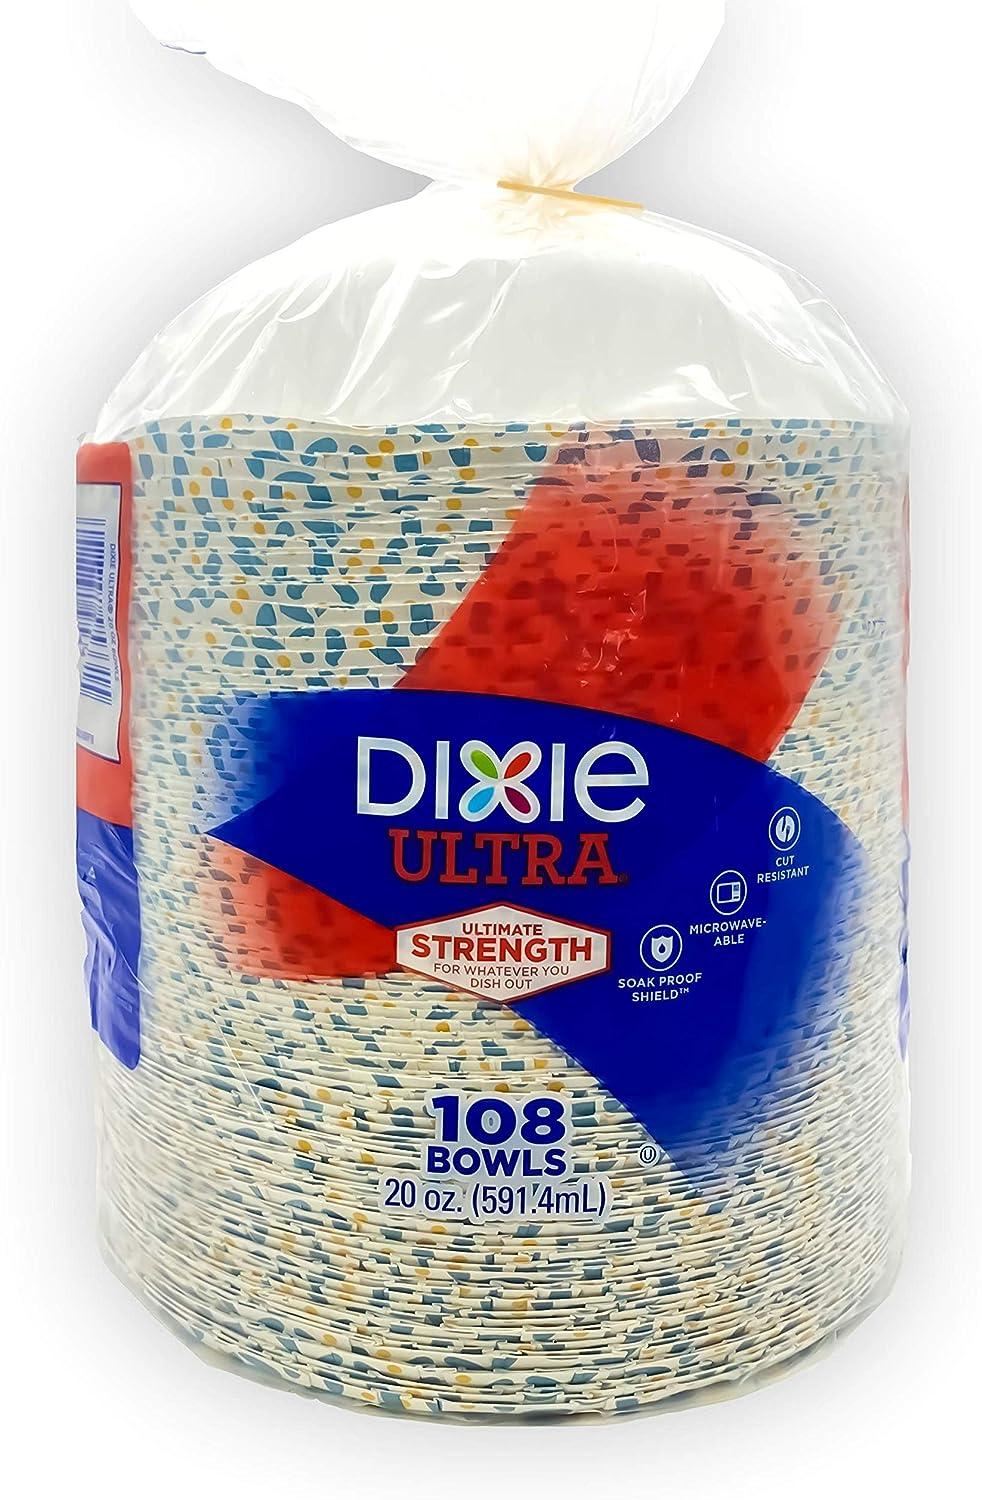 Dixie Ultra Paper Bowls (20 oz 135 Count Blue)